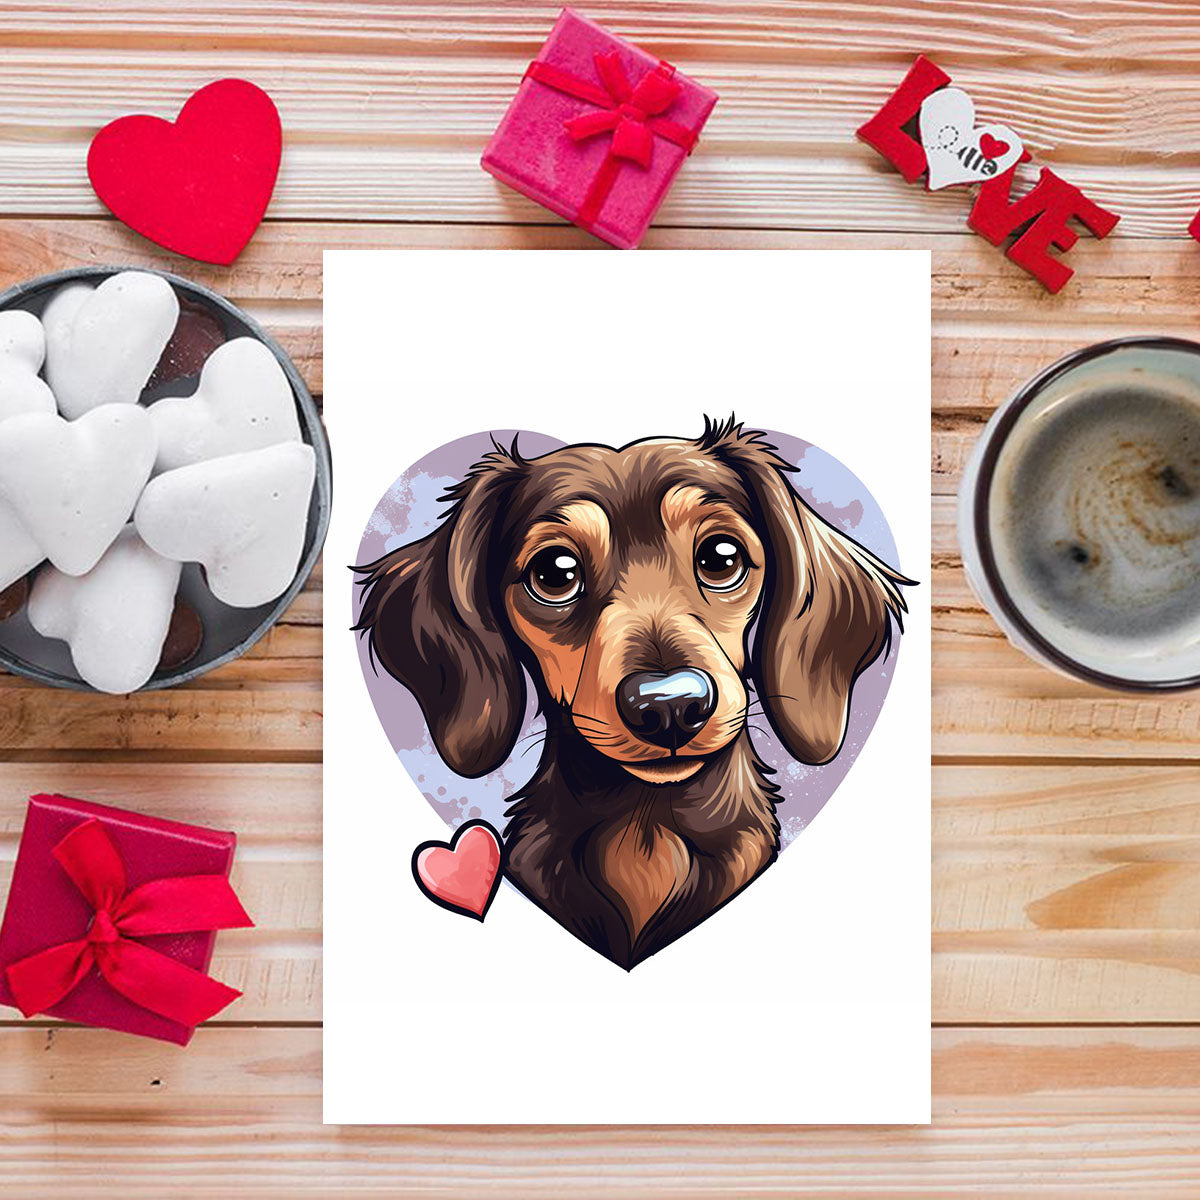 Cute Valentine Puppy Heart, Valentine Dog Canvas Print, Cute Dachshund Love Canvas Wall Art, Valentine's Dog Painting, Valentine's Canvas, Pet Lover, Valentines Gift